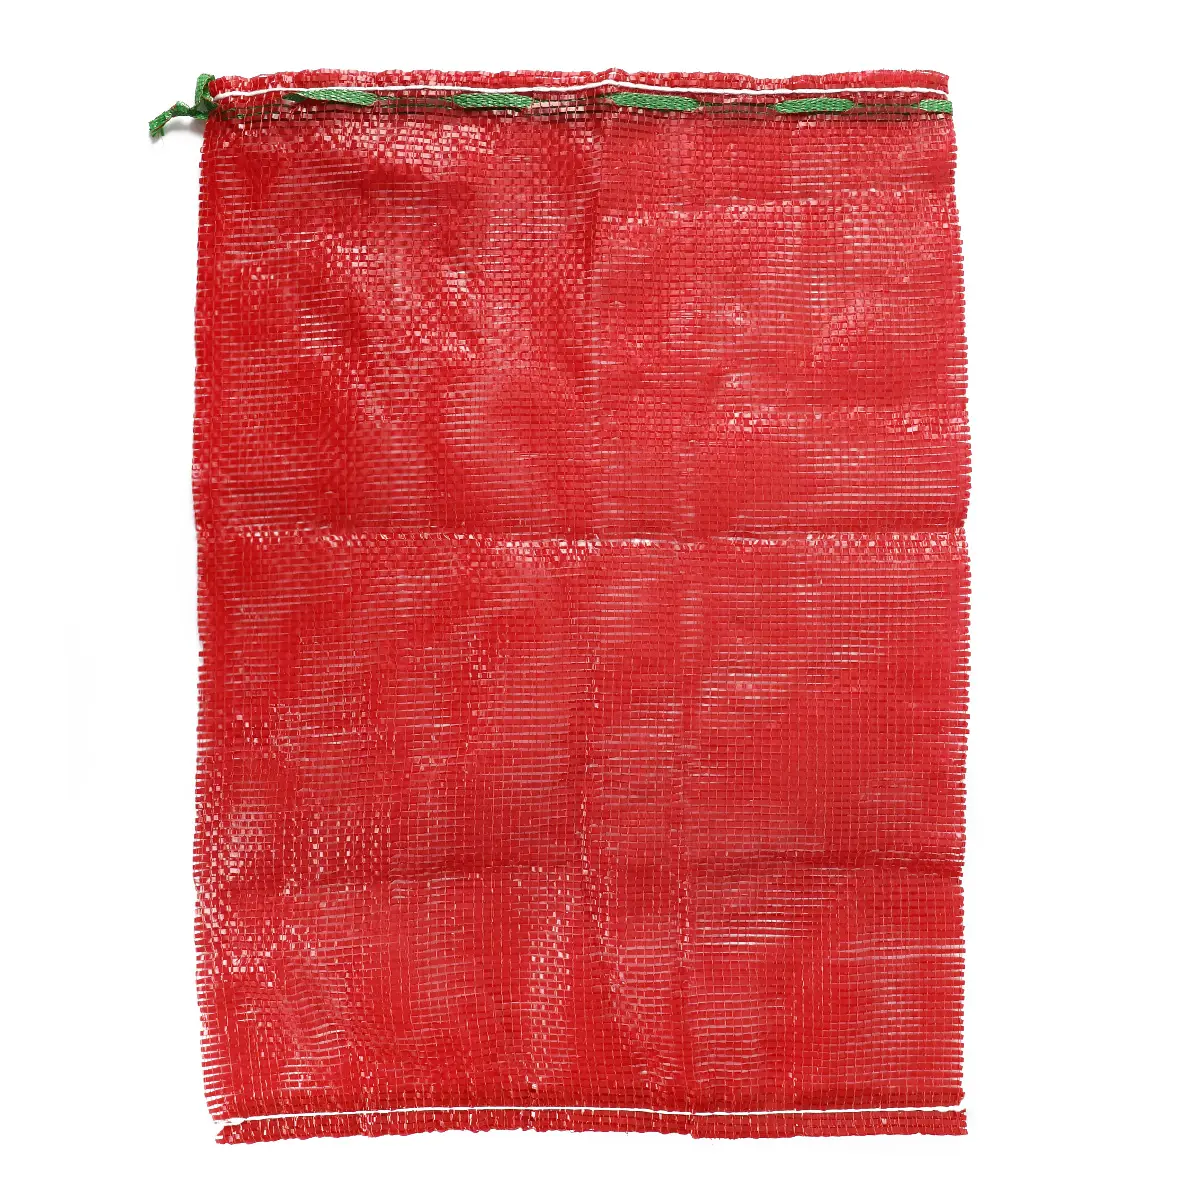 アサリメッシュネットバッグシーフードメッシュバッグカスタムサイズで梱包するためのカスタムカラー巾着管状メッシュバッグ赤いパッキングフルーツ